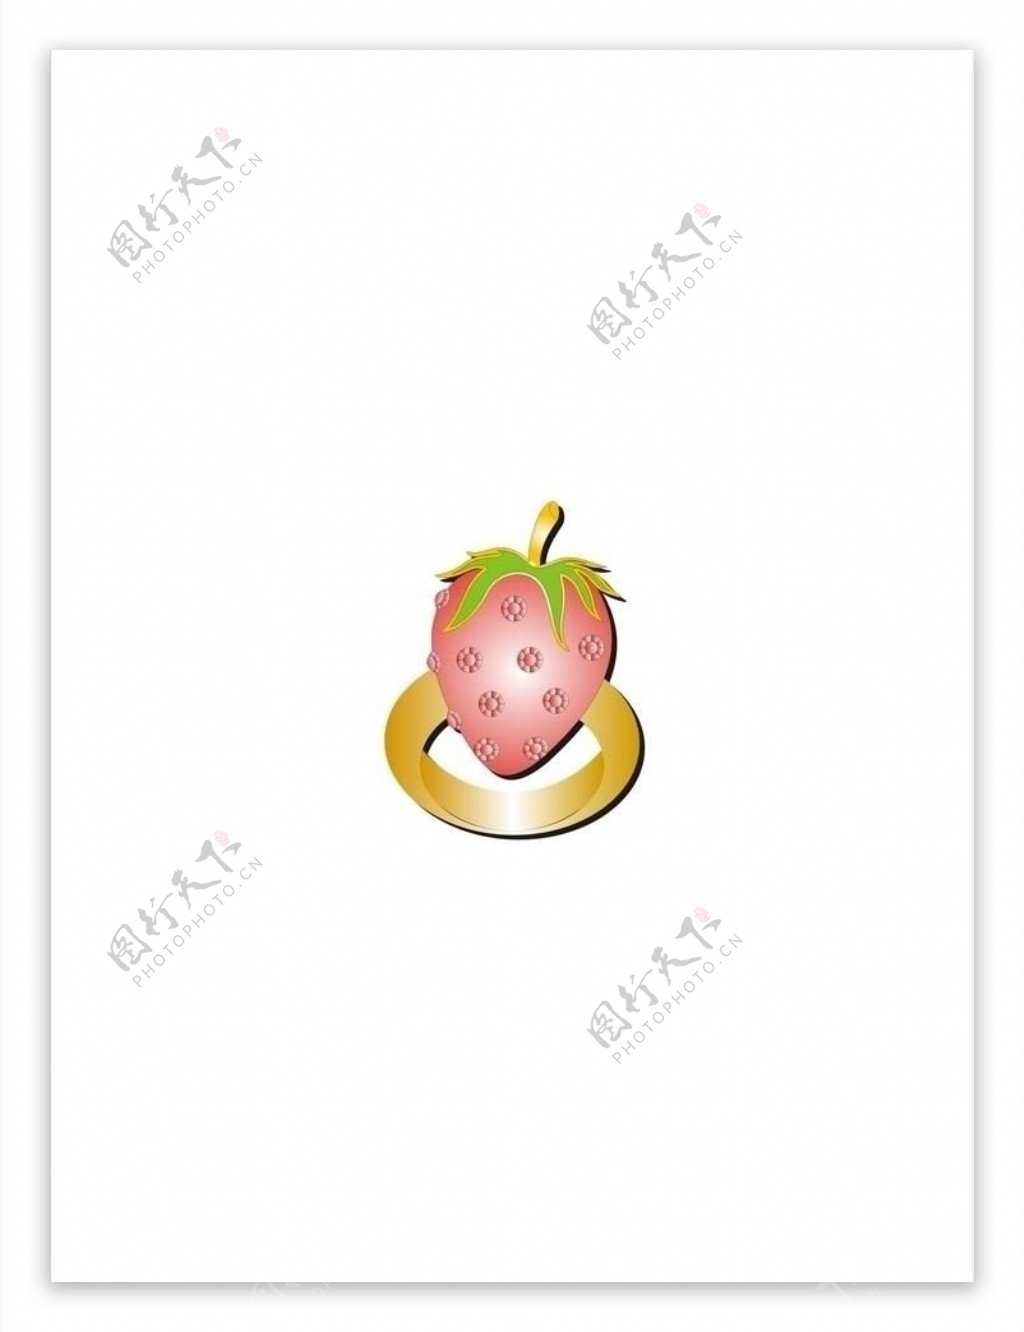 水果草莓戒指图片